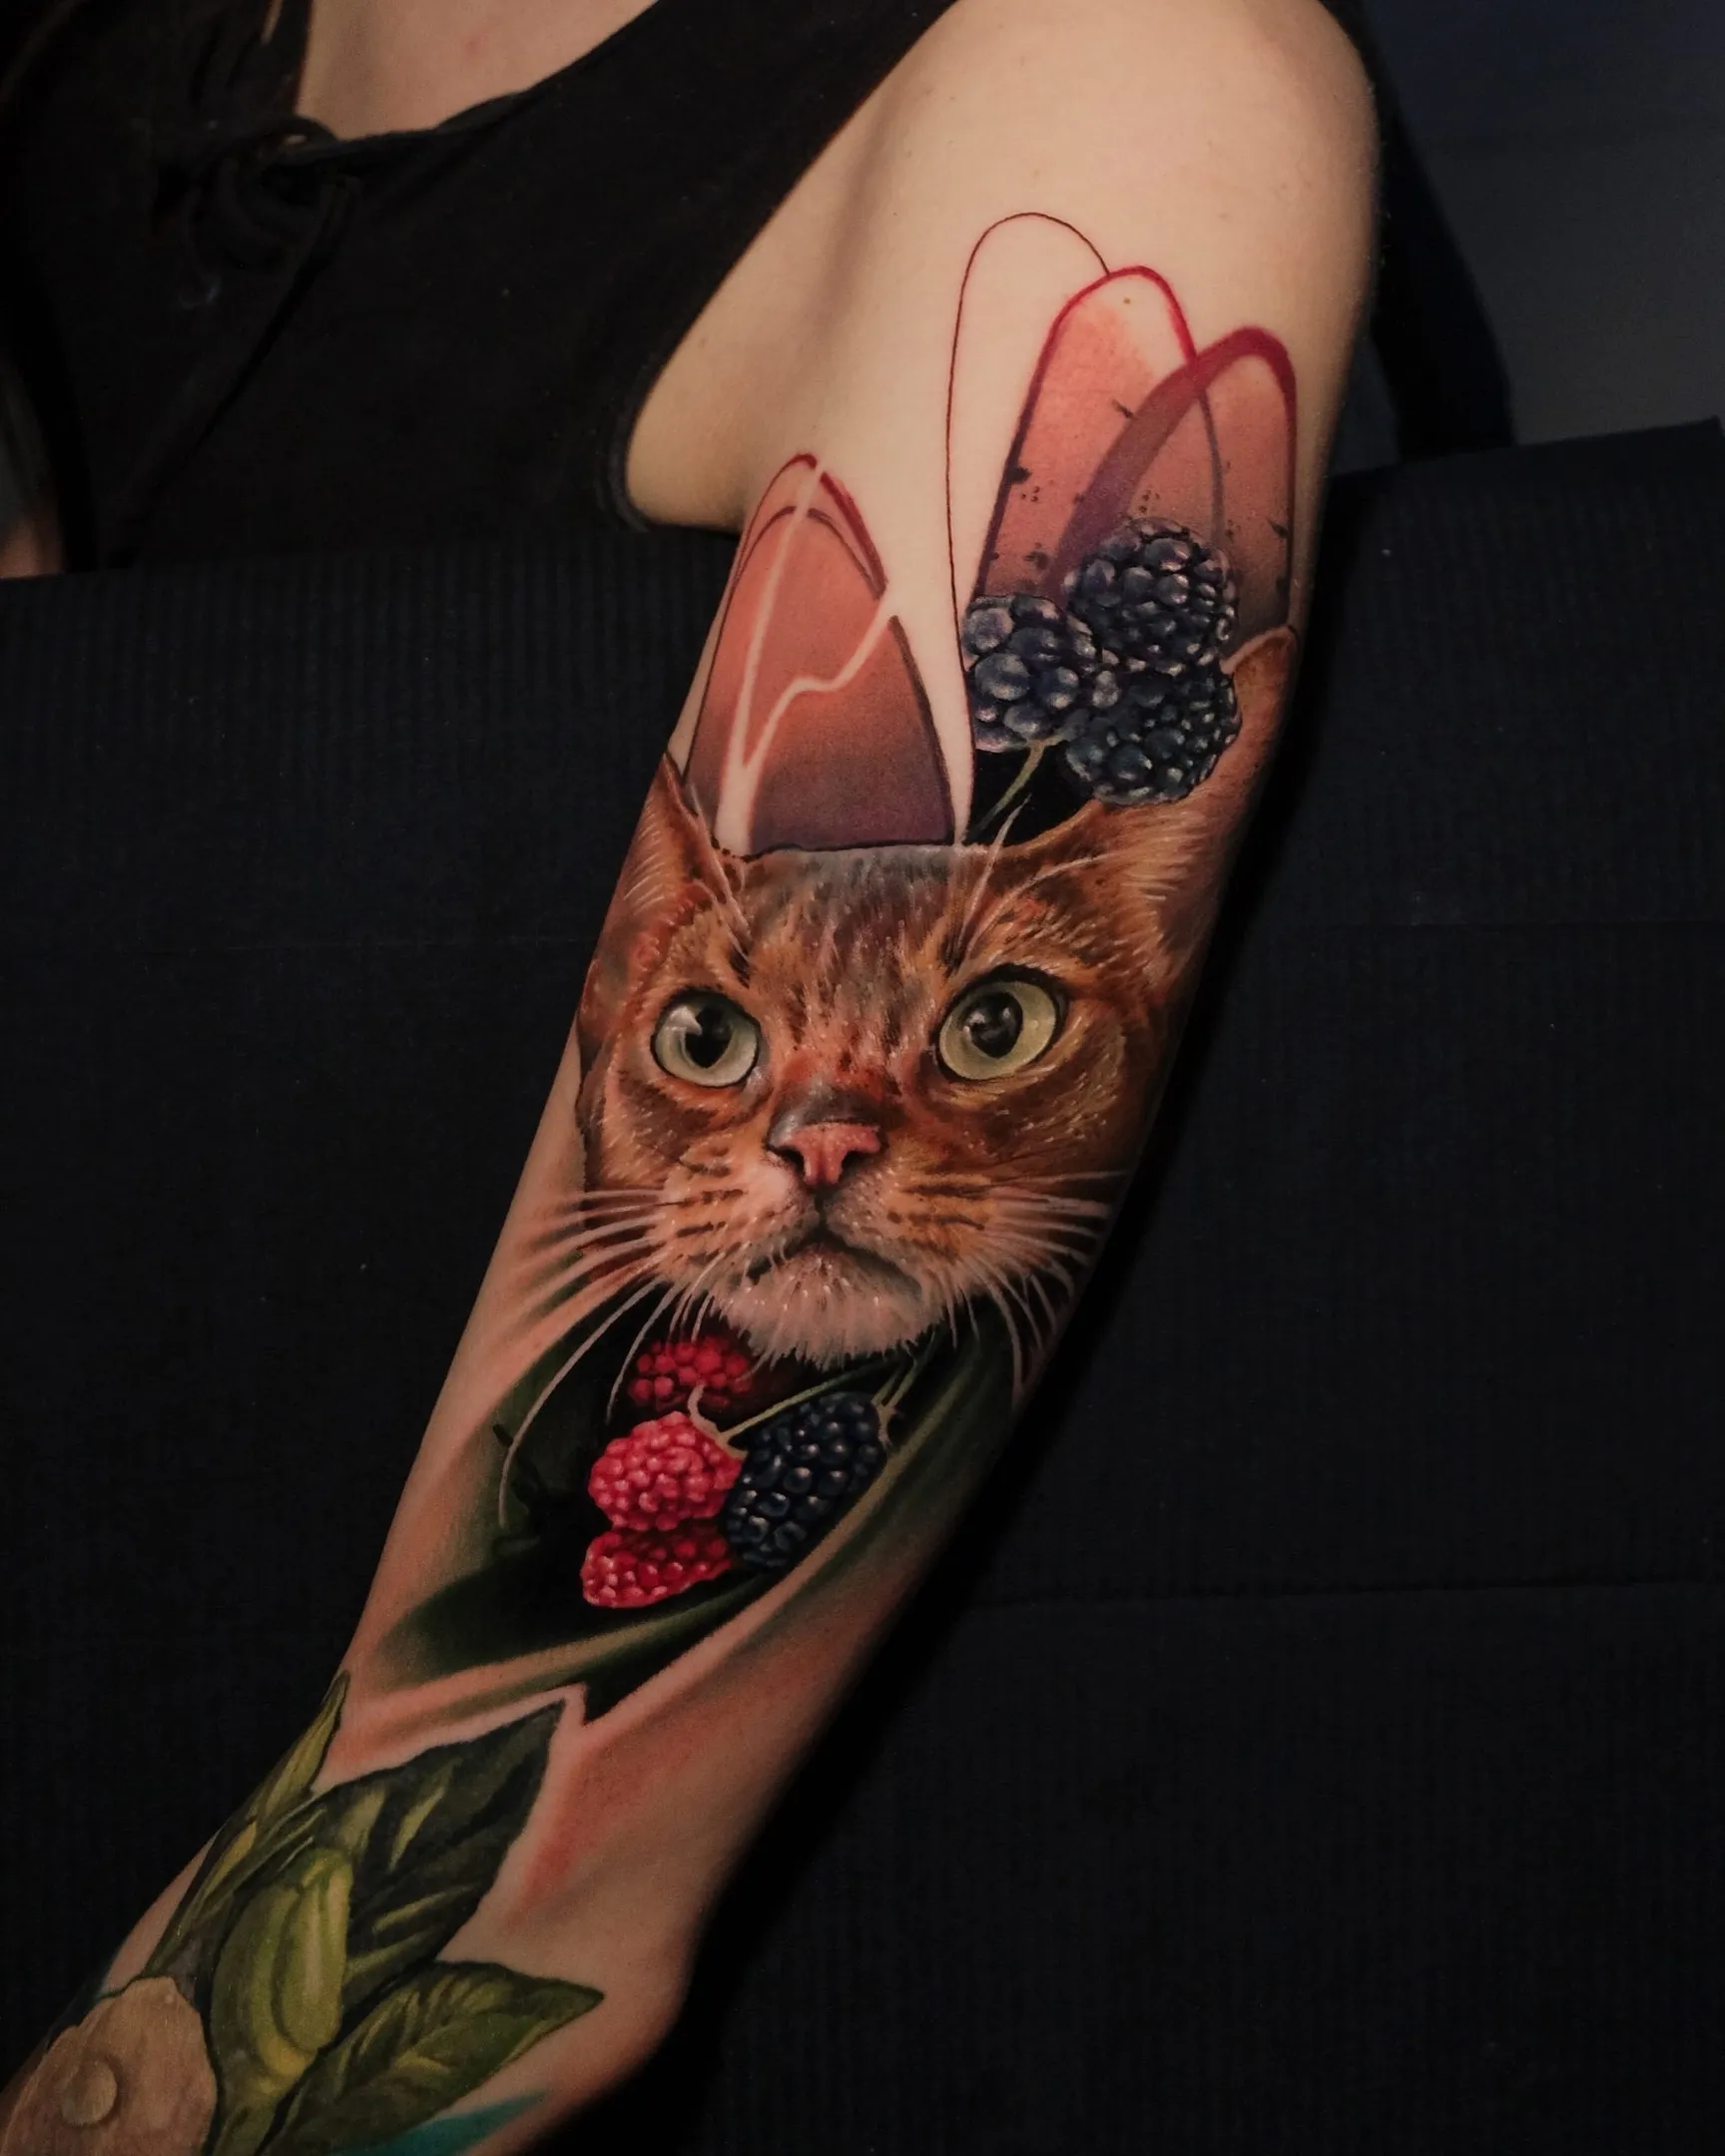 Зачем коту татуировка: Ученые потребовали запретить калечить животных